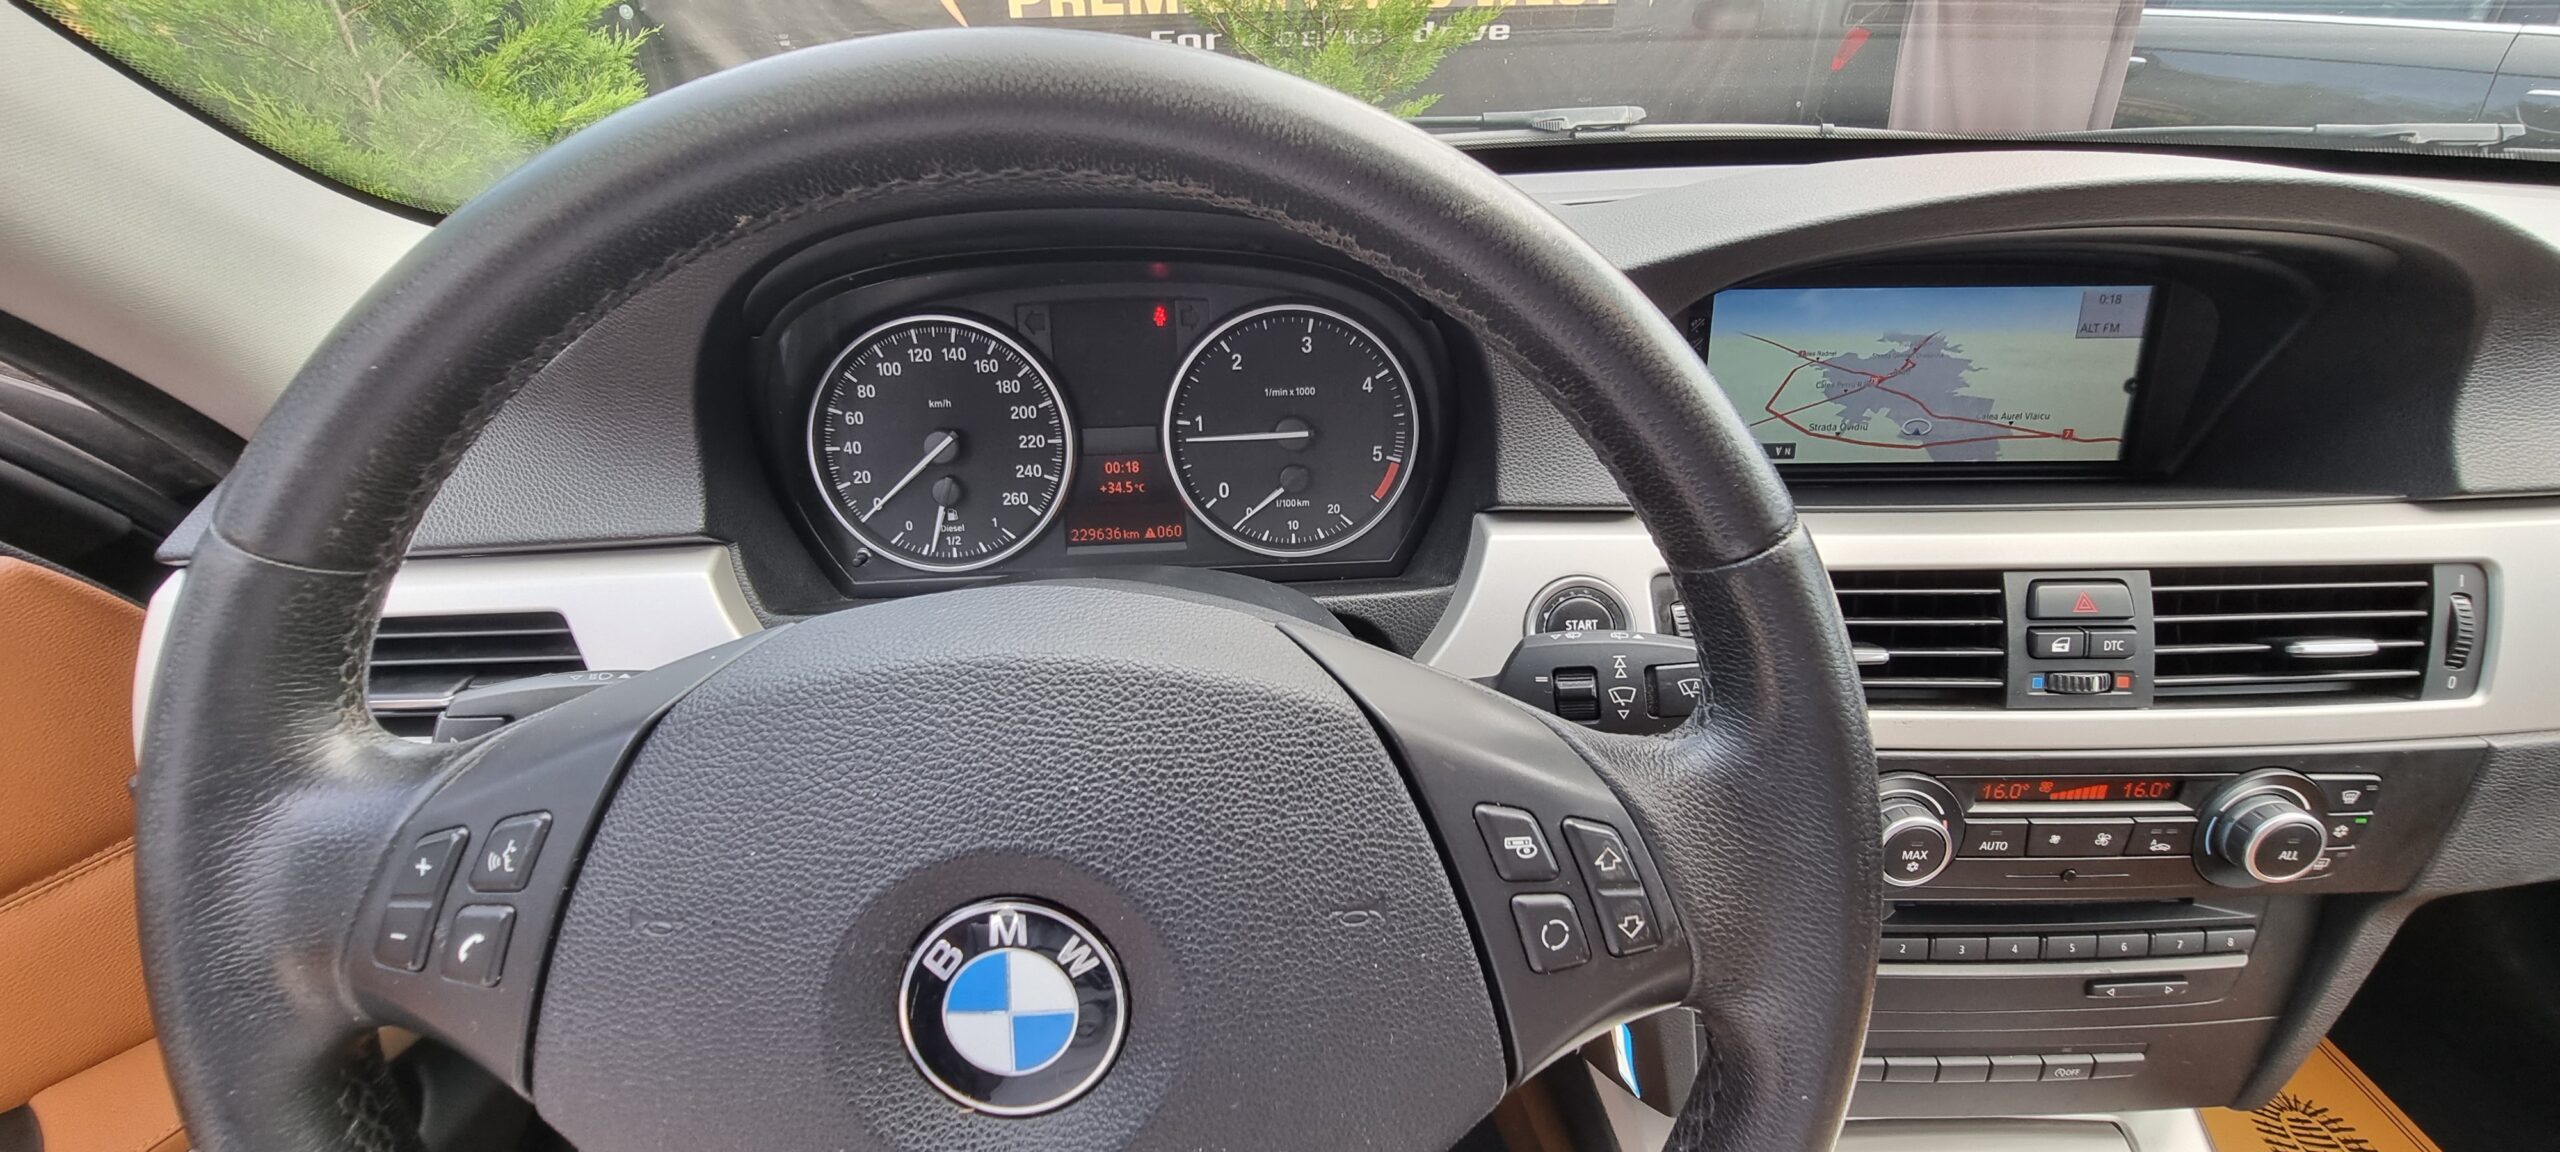 BMW SERIA 3, 2.0 DIESEL, 143 CP, EURO 5, AN 2010